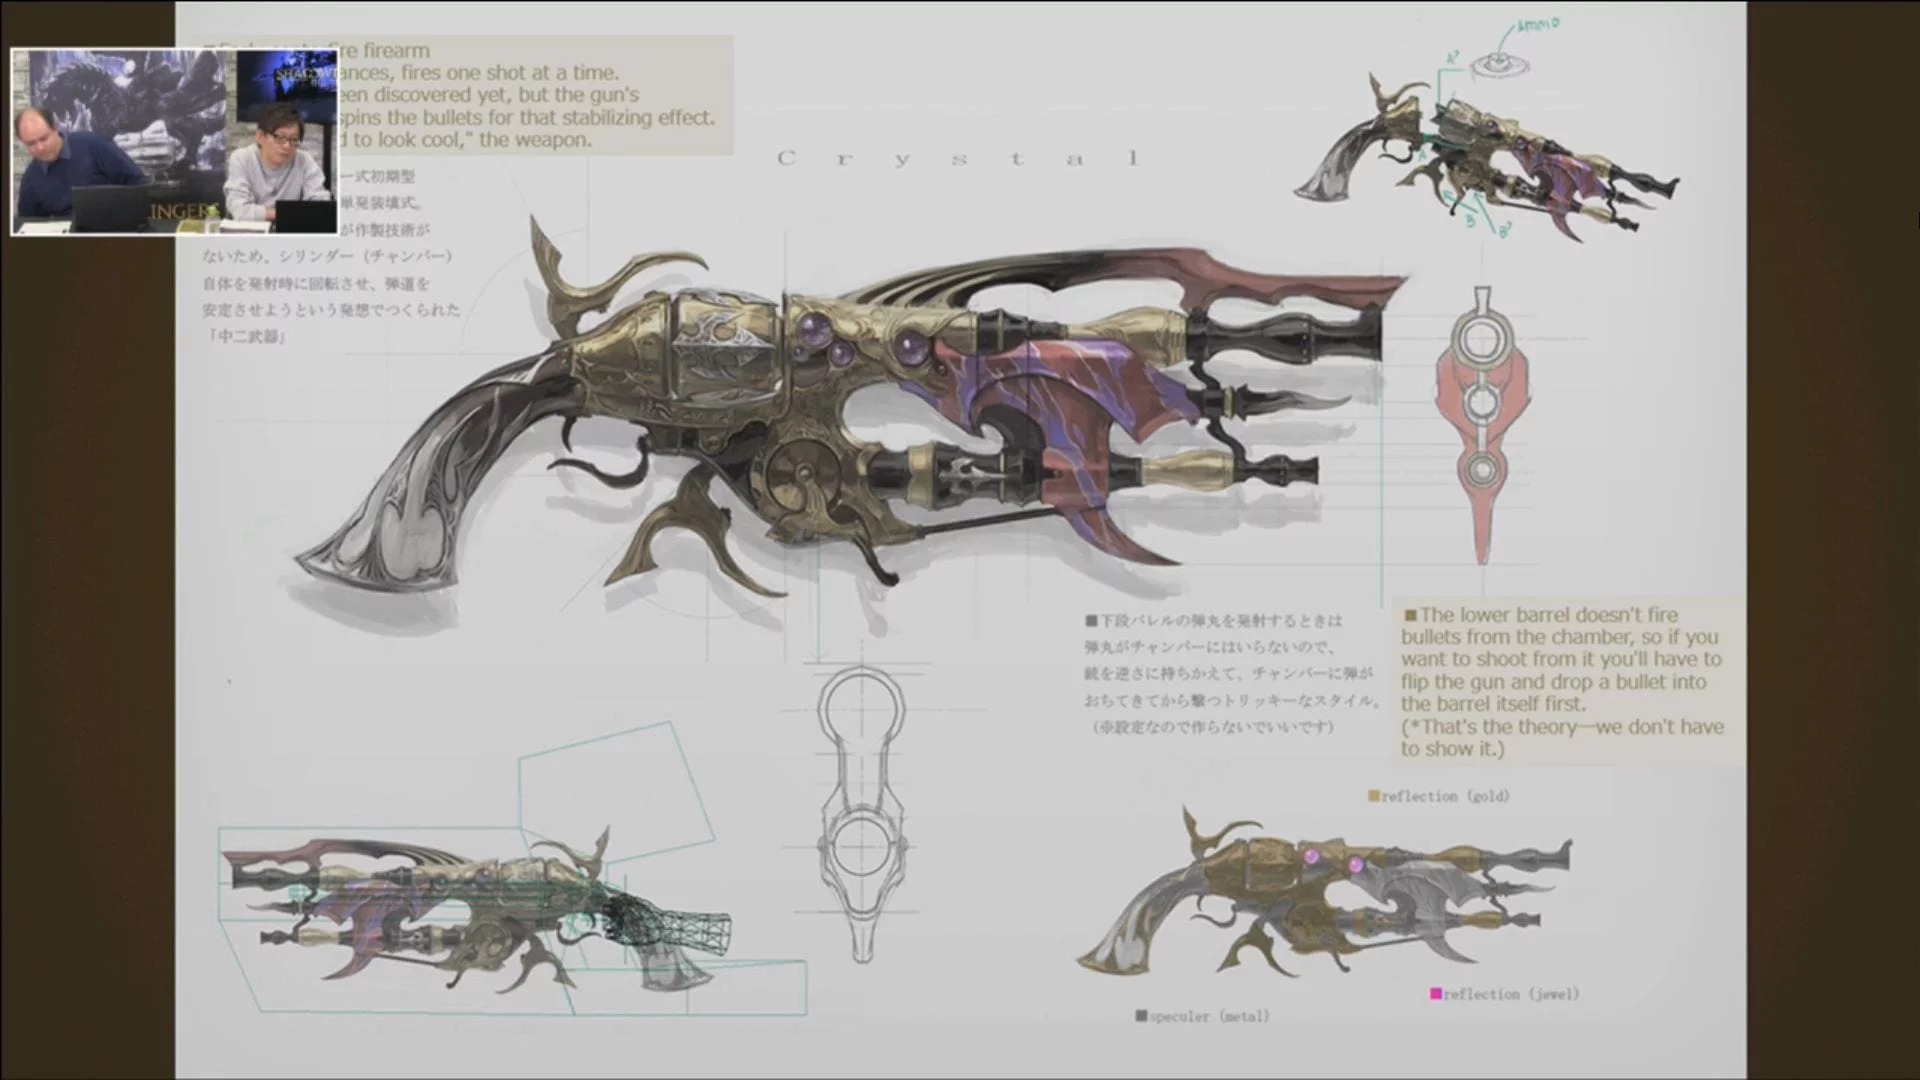 《最终幻想14》美术设计幕后秘闻 猜猜舞者灵感来源